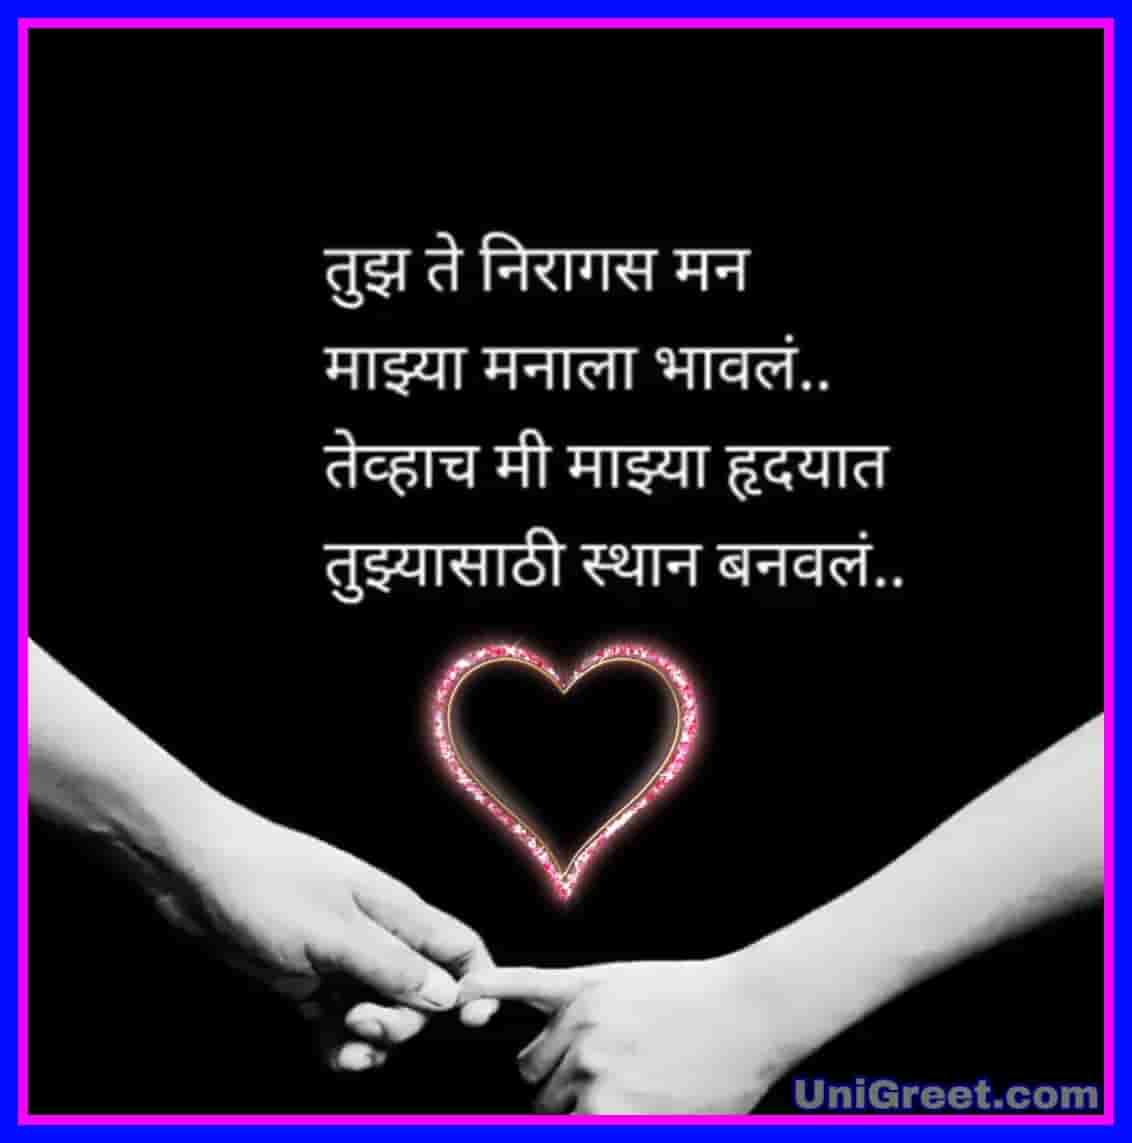 Love-image-Marathi﻿